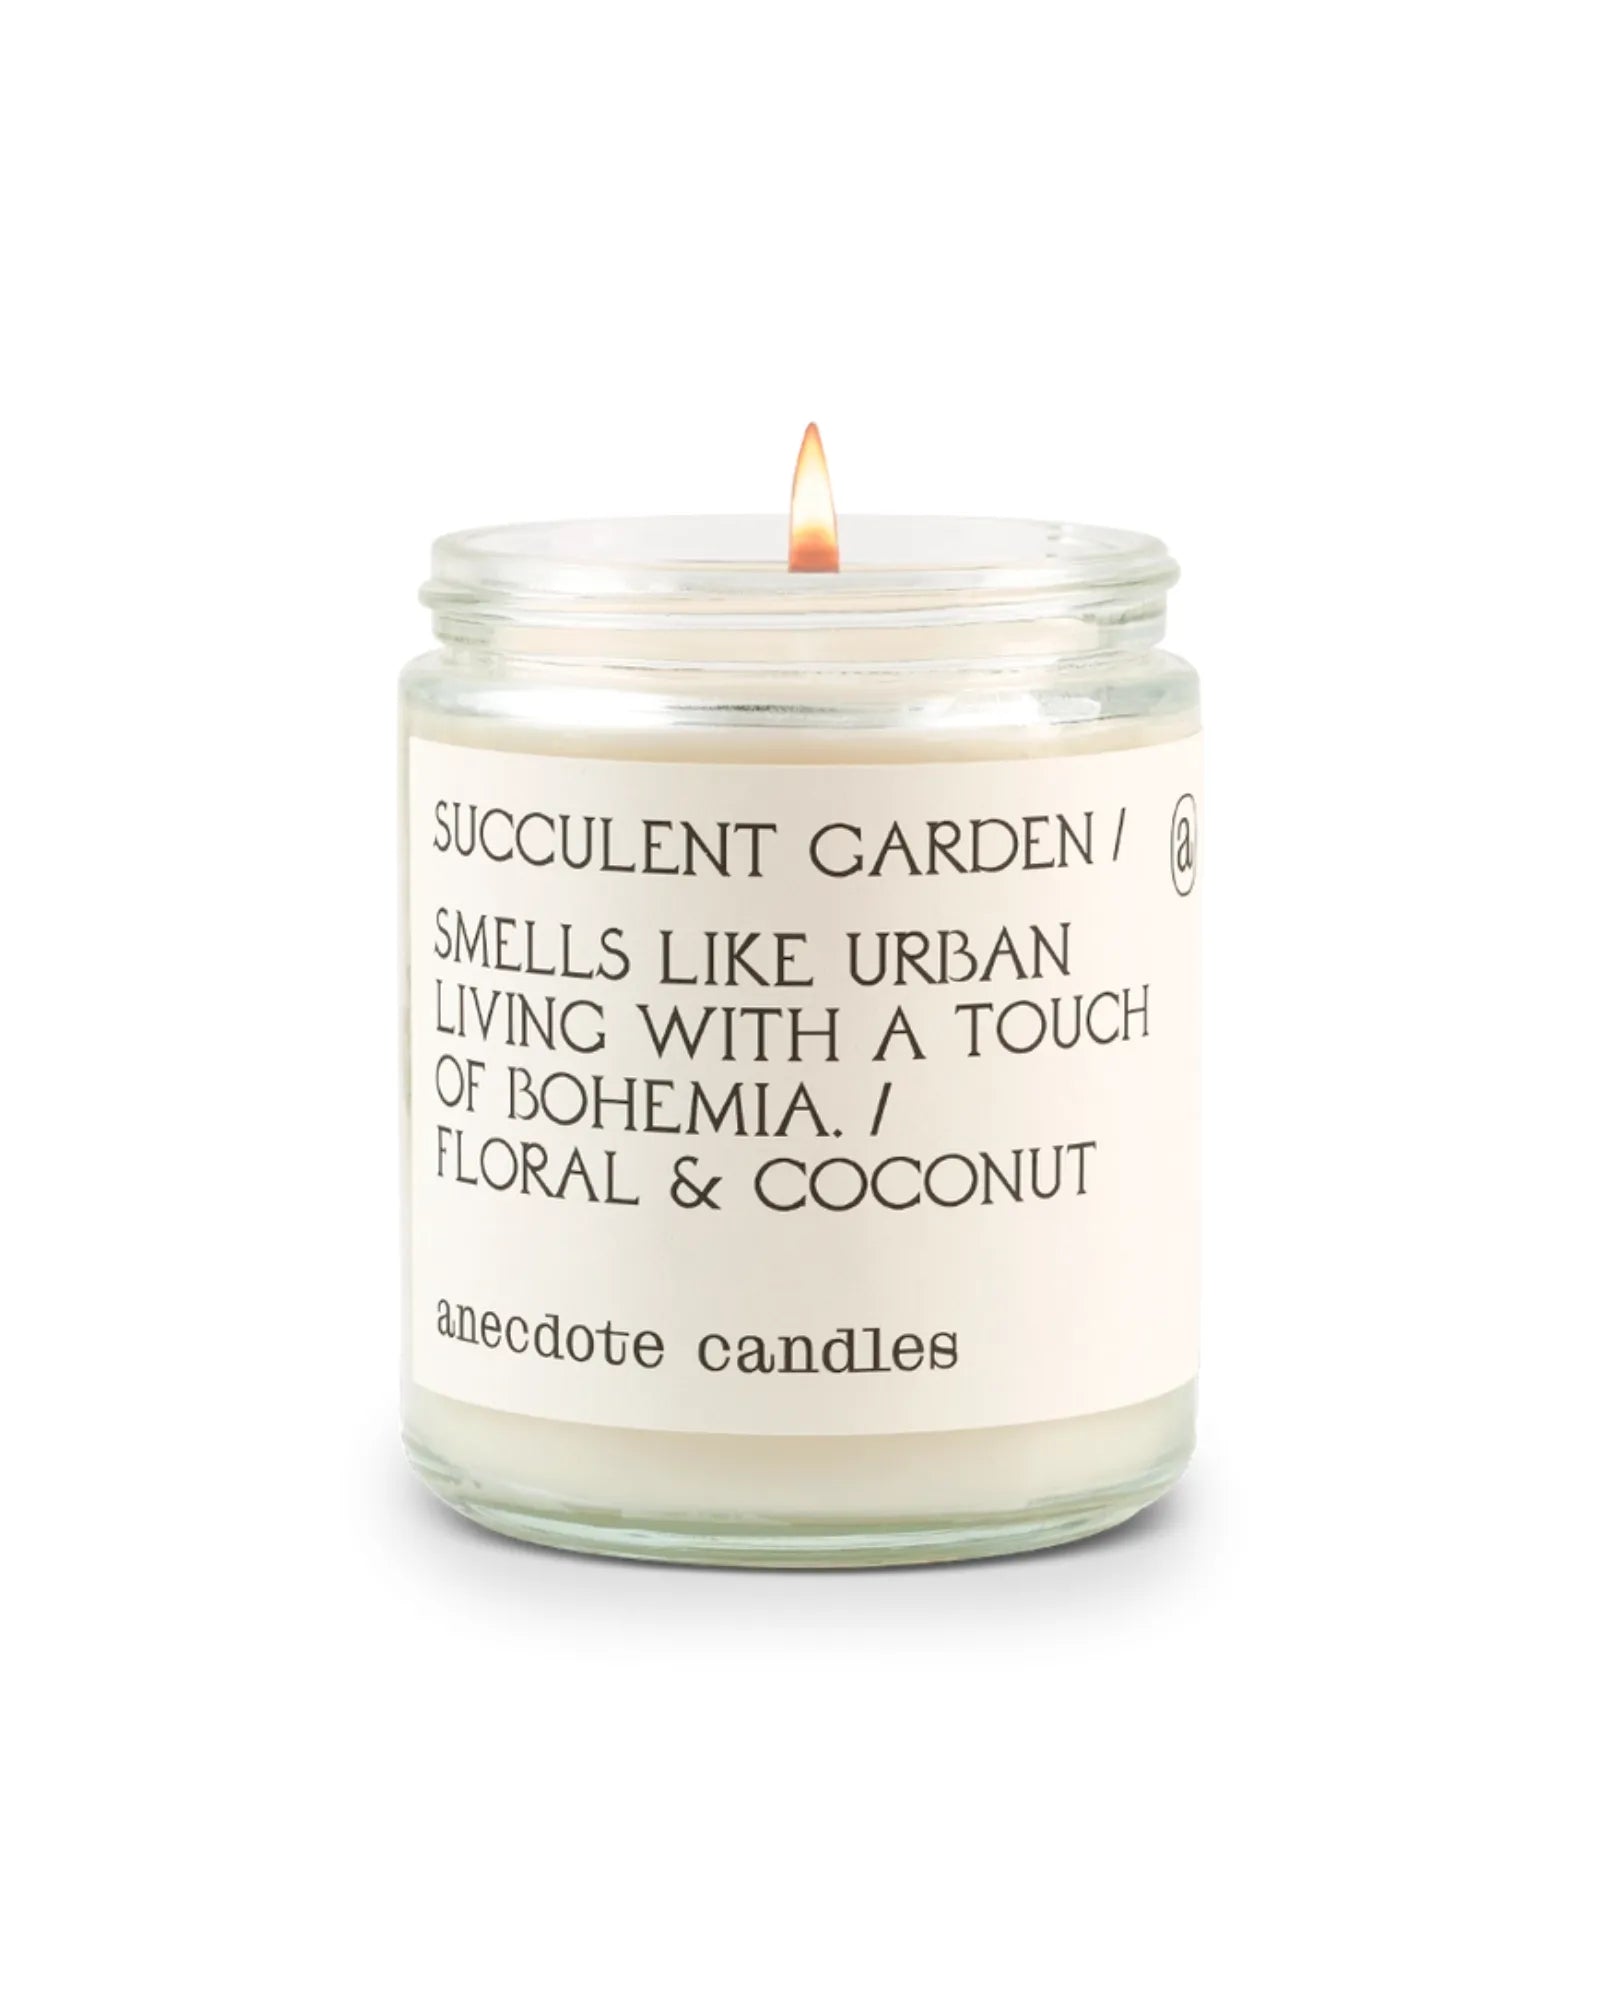 Succulent Garden (Floral & Coconut) 7.8 oz Candle